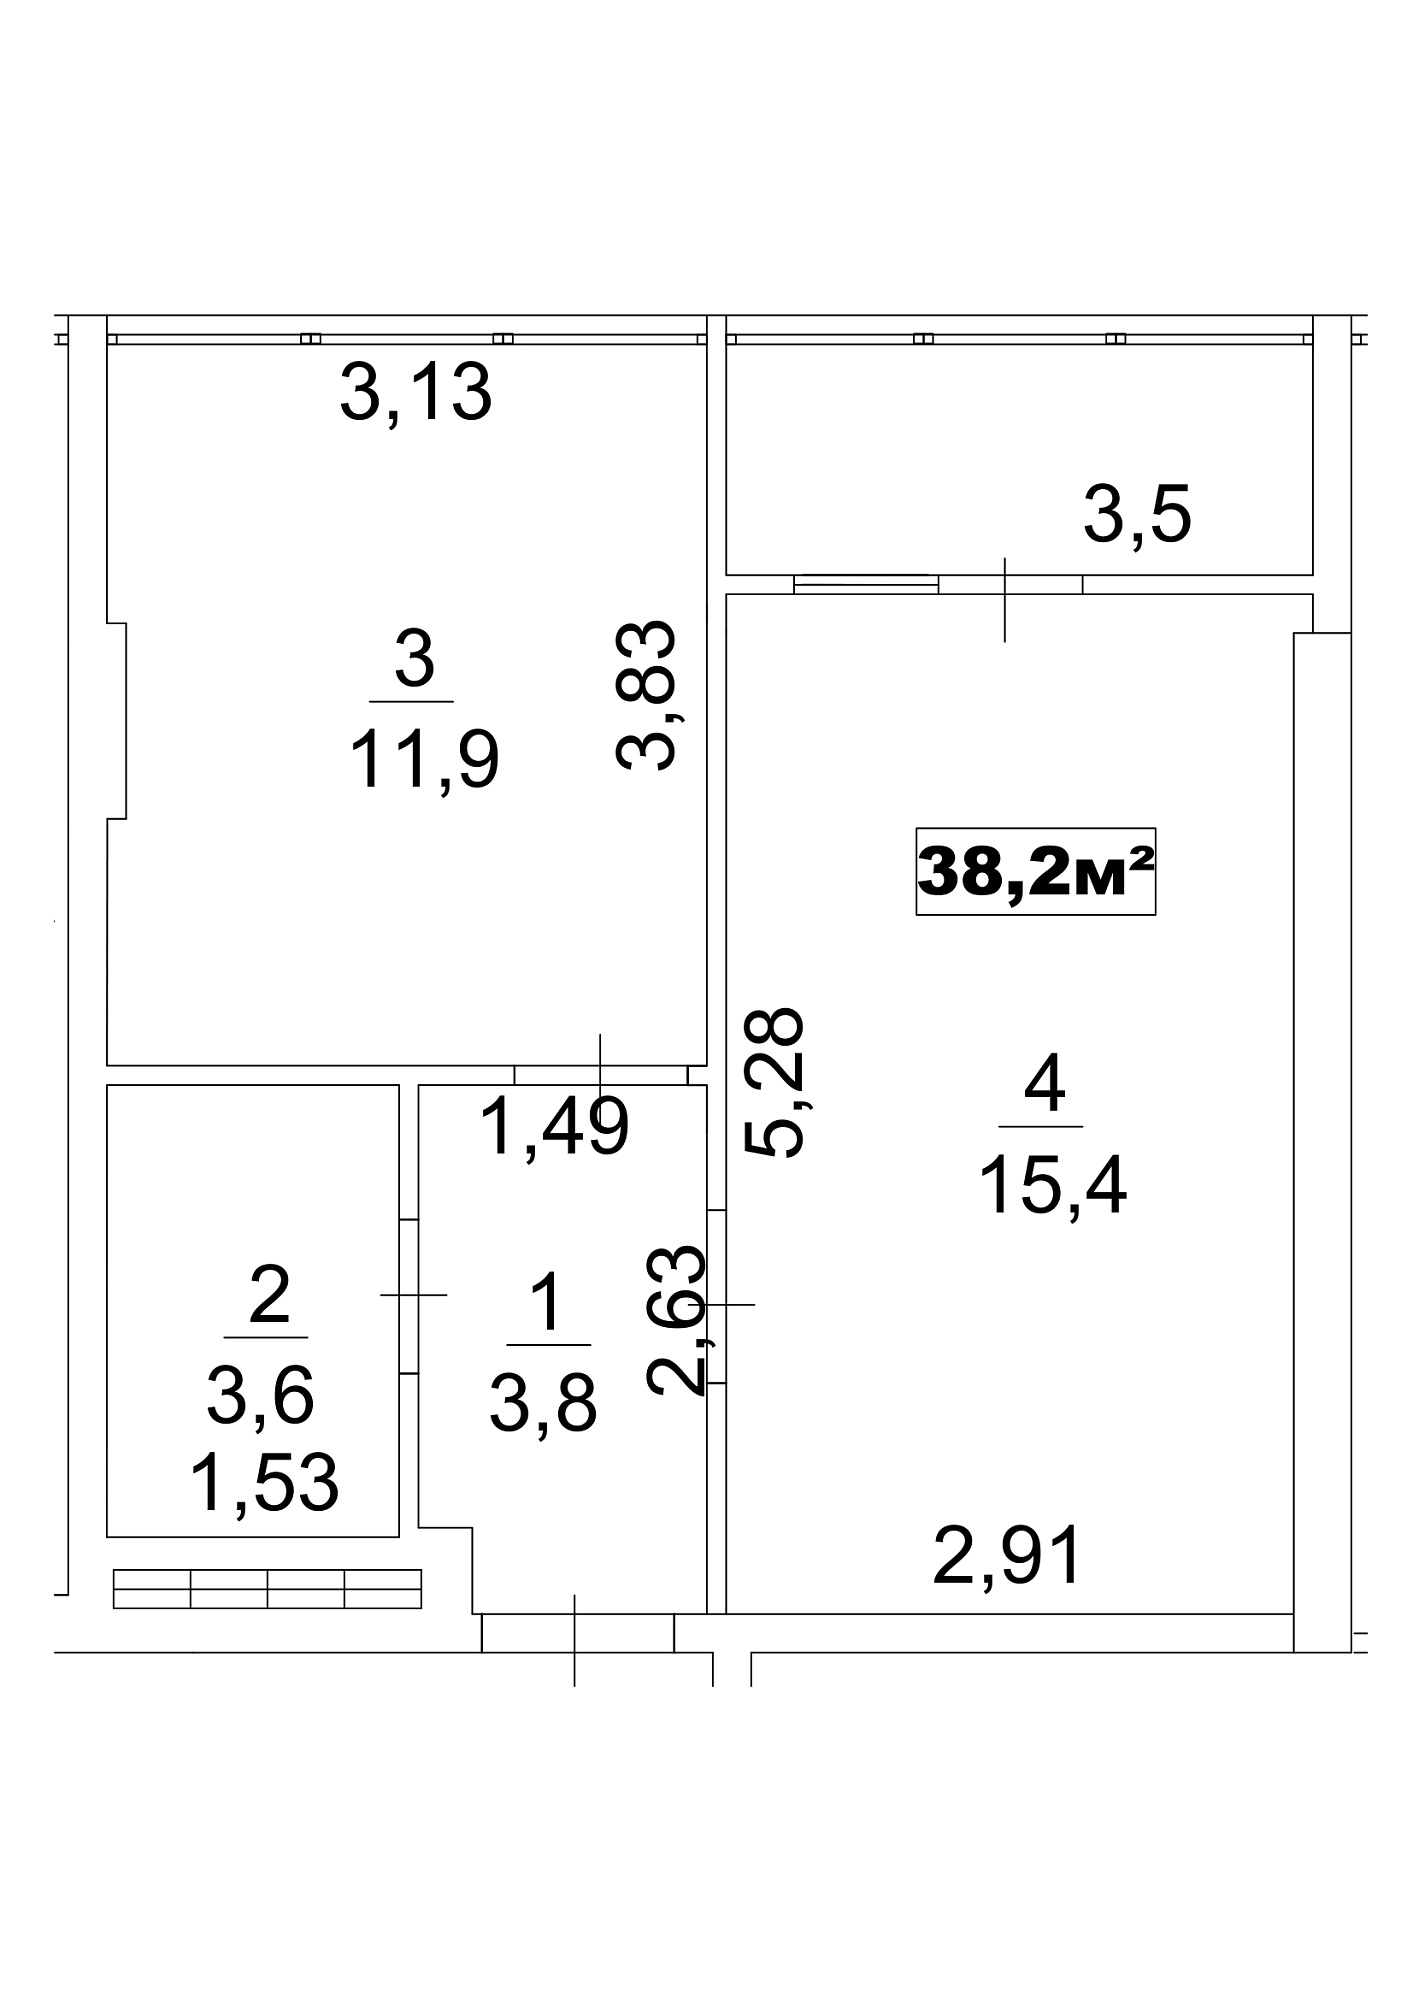 Планировка 1-к квартира площей 38.2м2, AB-13-01/0003г.